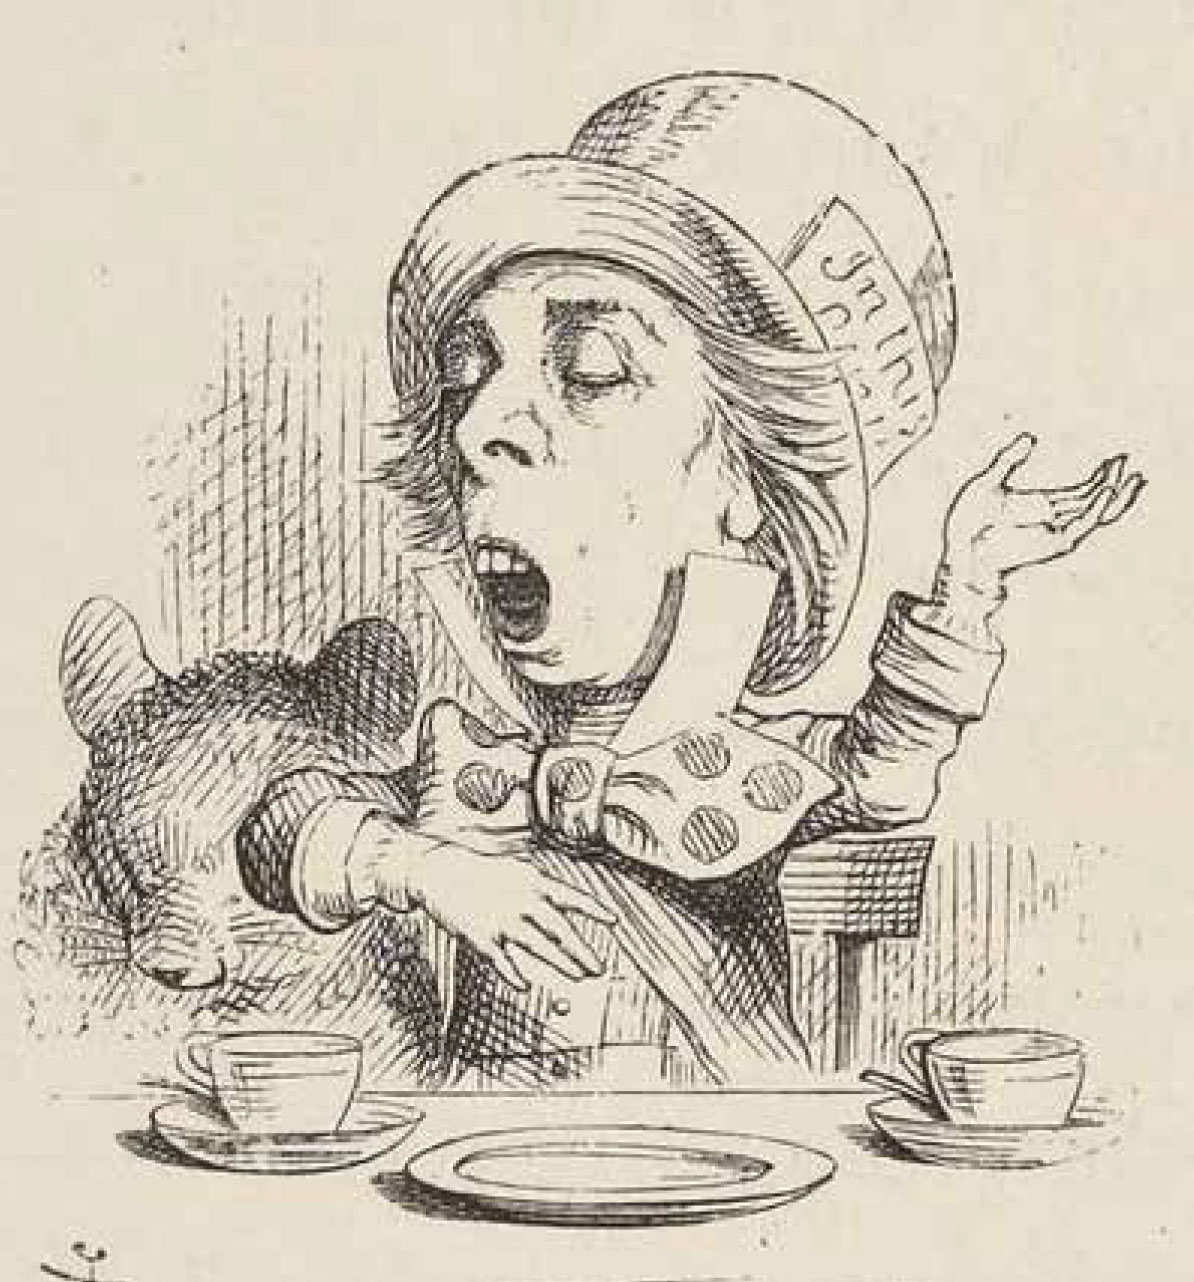 Der verrückte Hutmacher (Illustration von John Tenniel, 1865)